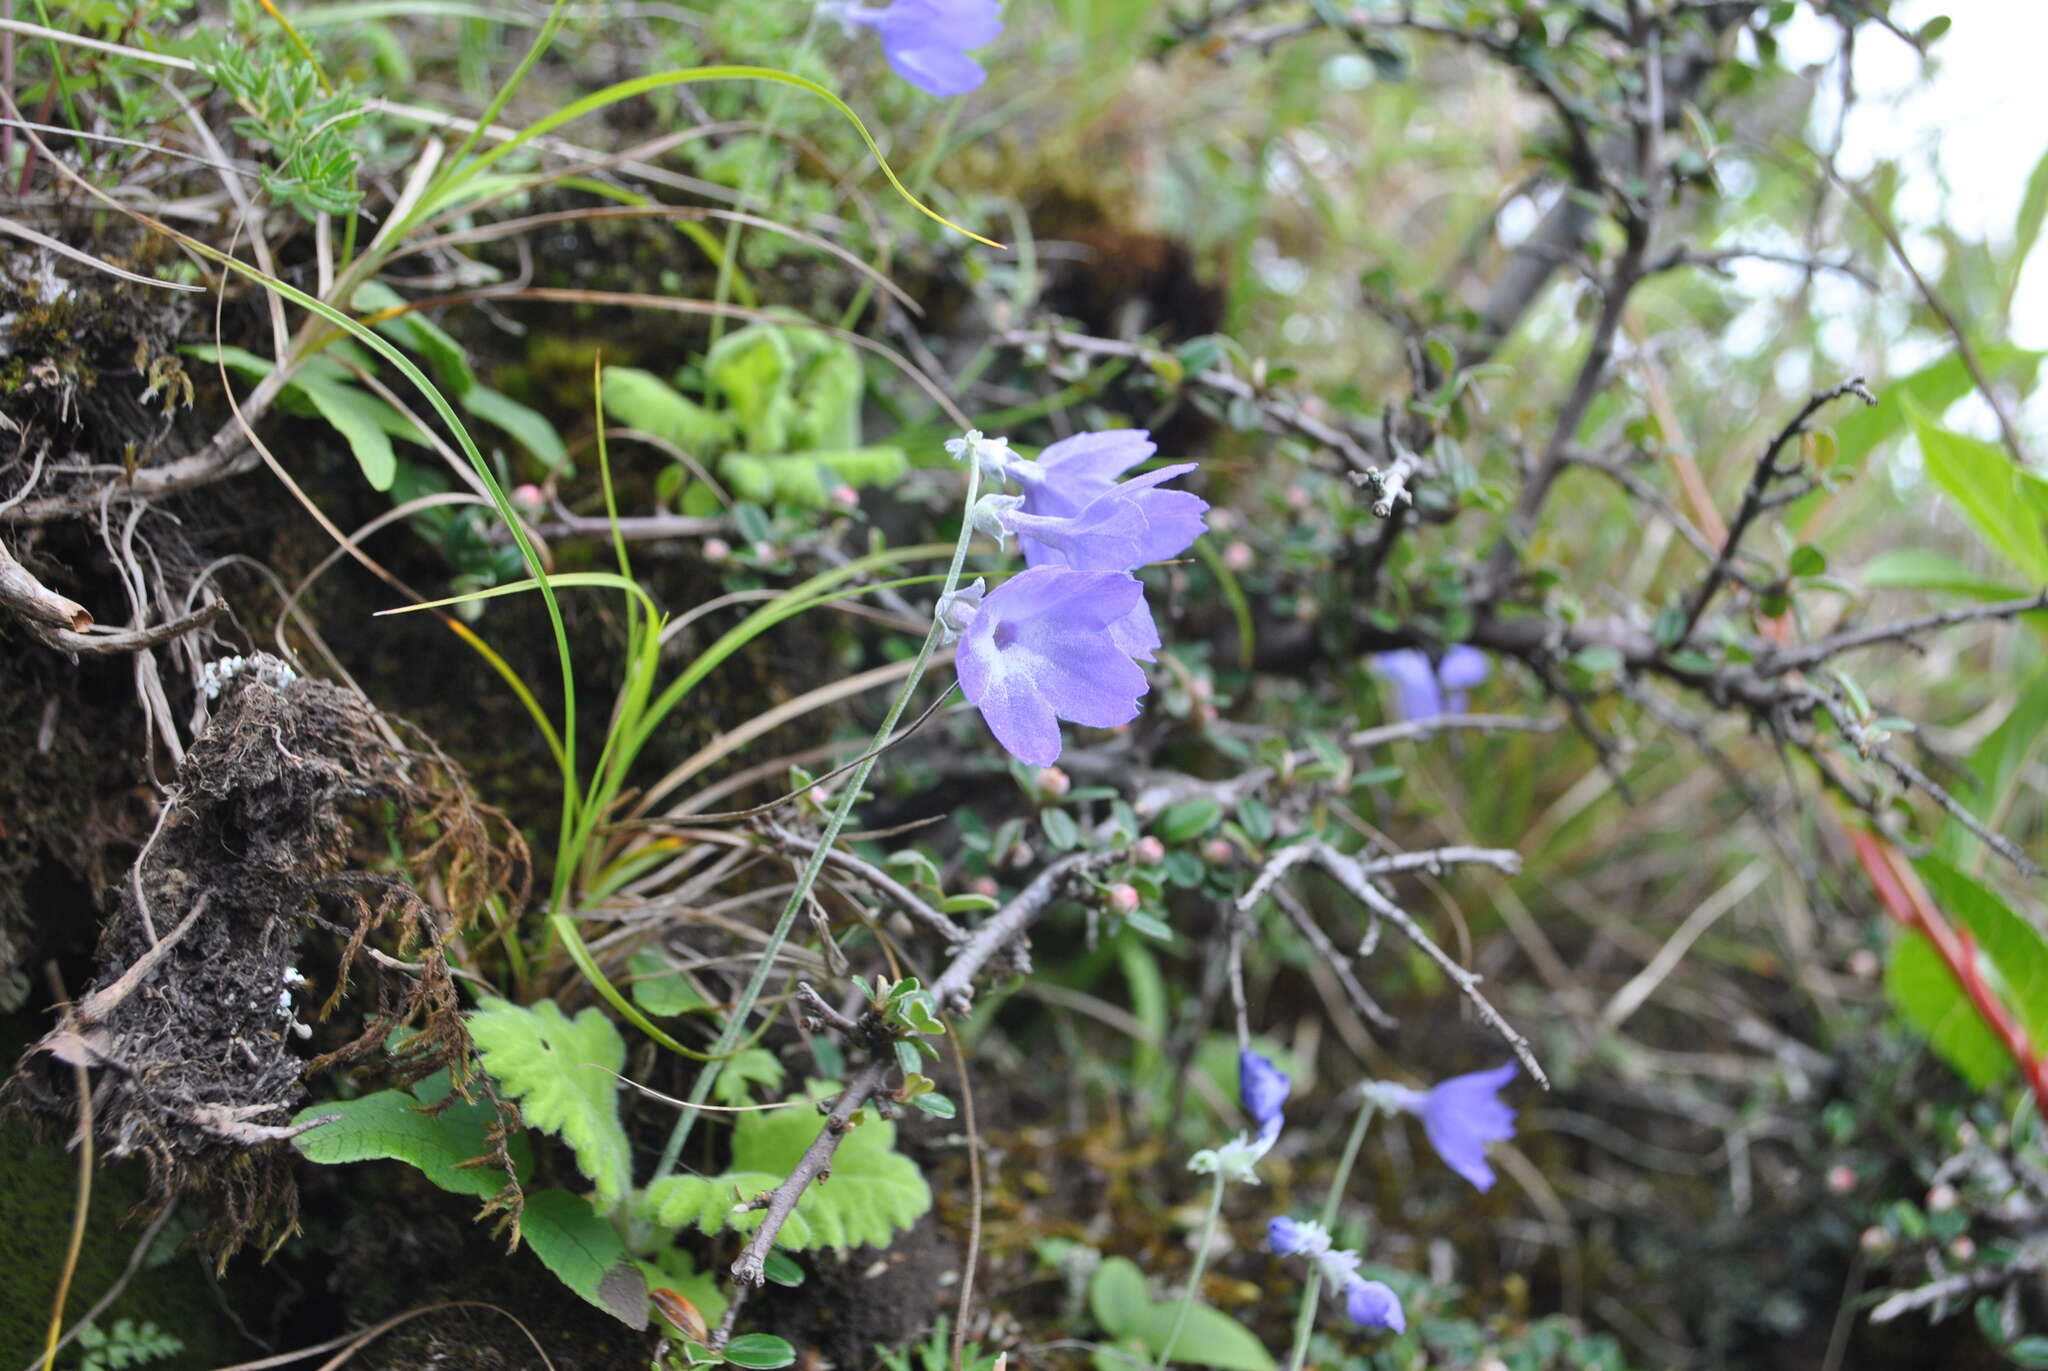 Image of Primula spicata Franch.